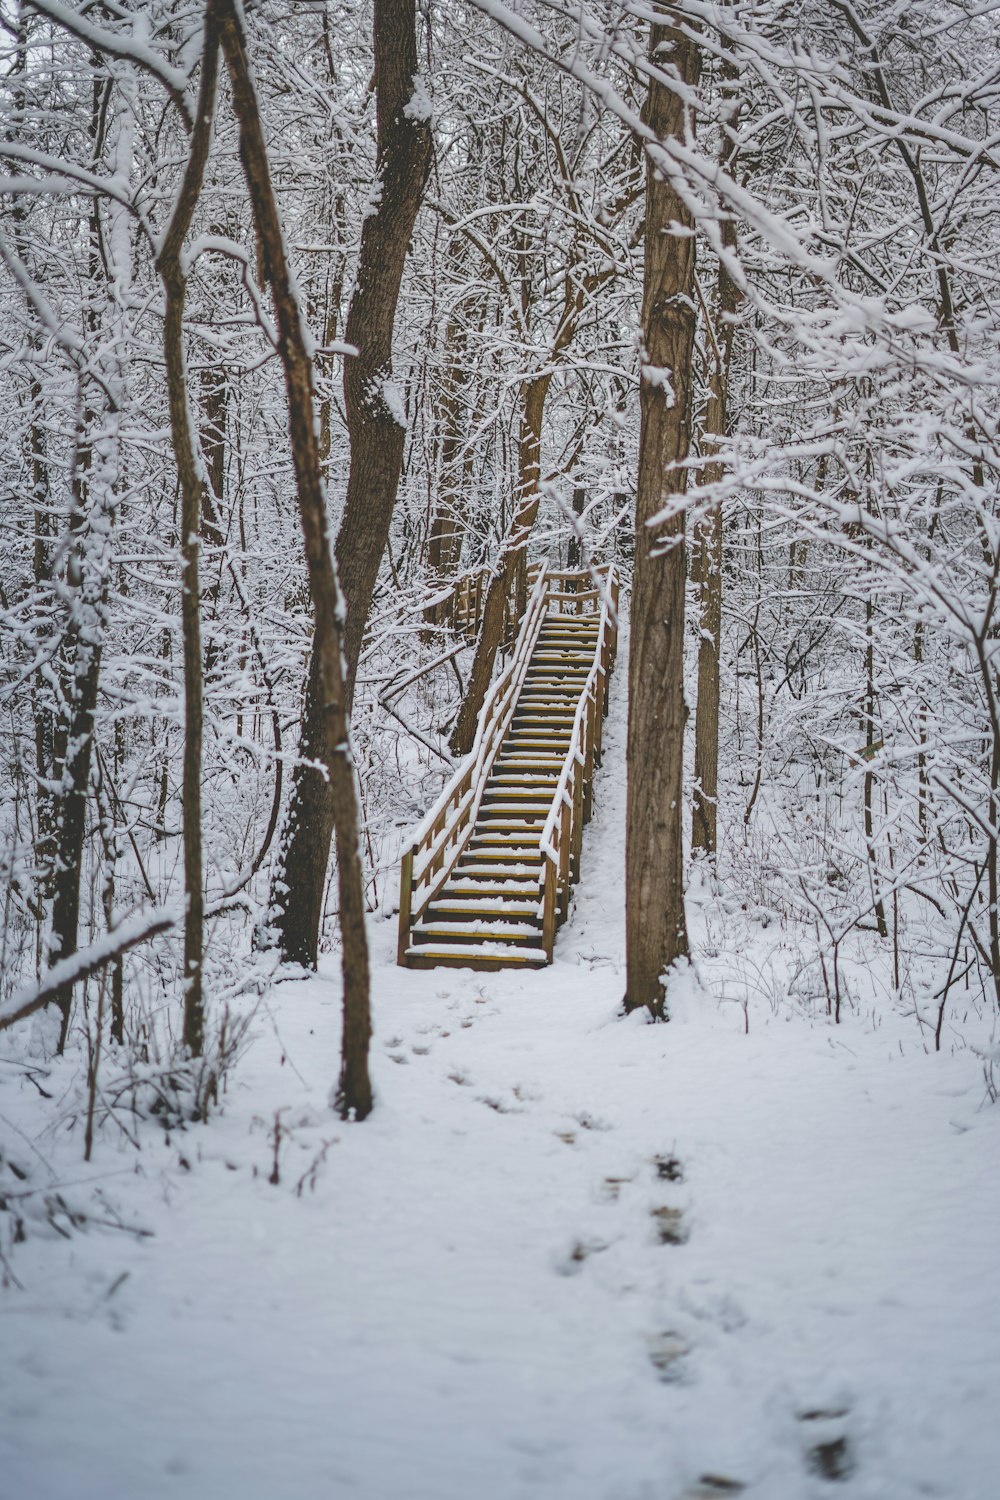 雪に覆われた茶色の木の階段